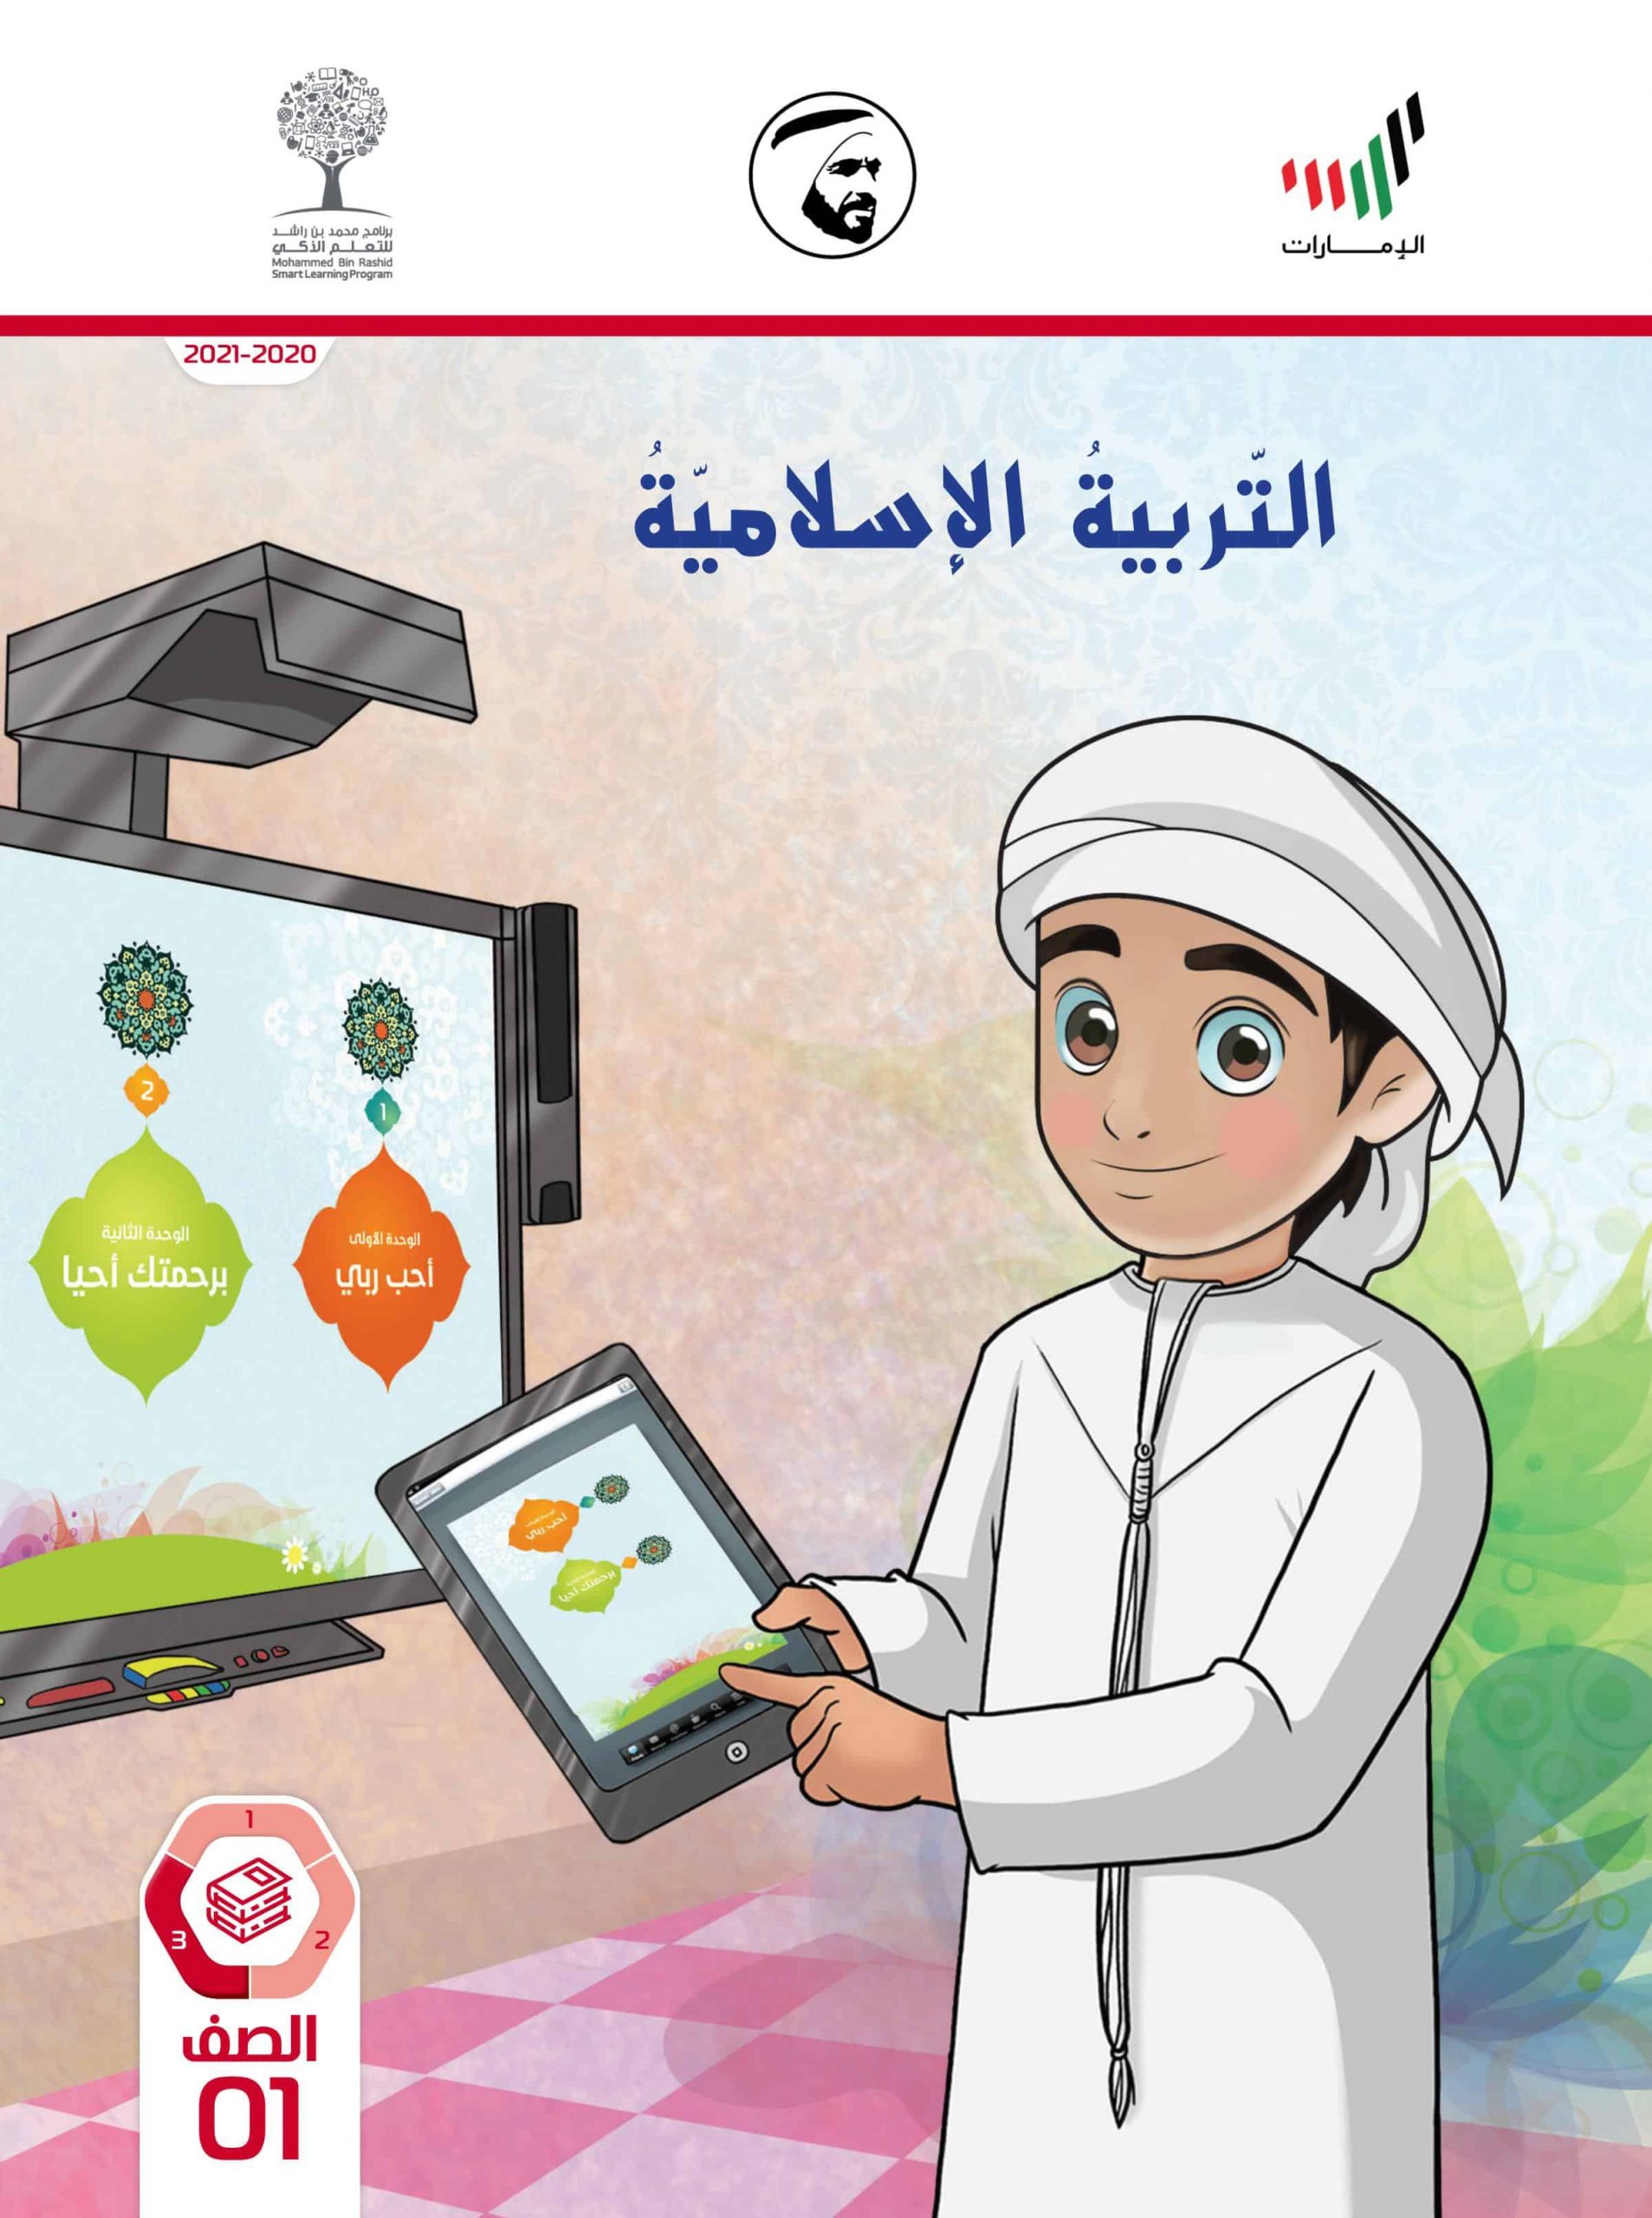 كتاب الطالب الفصل الدراسي الثالث 2020-2021 الصف الأول مادة التربية الإسلامية